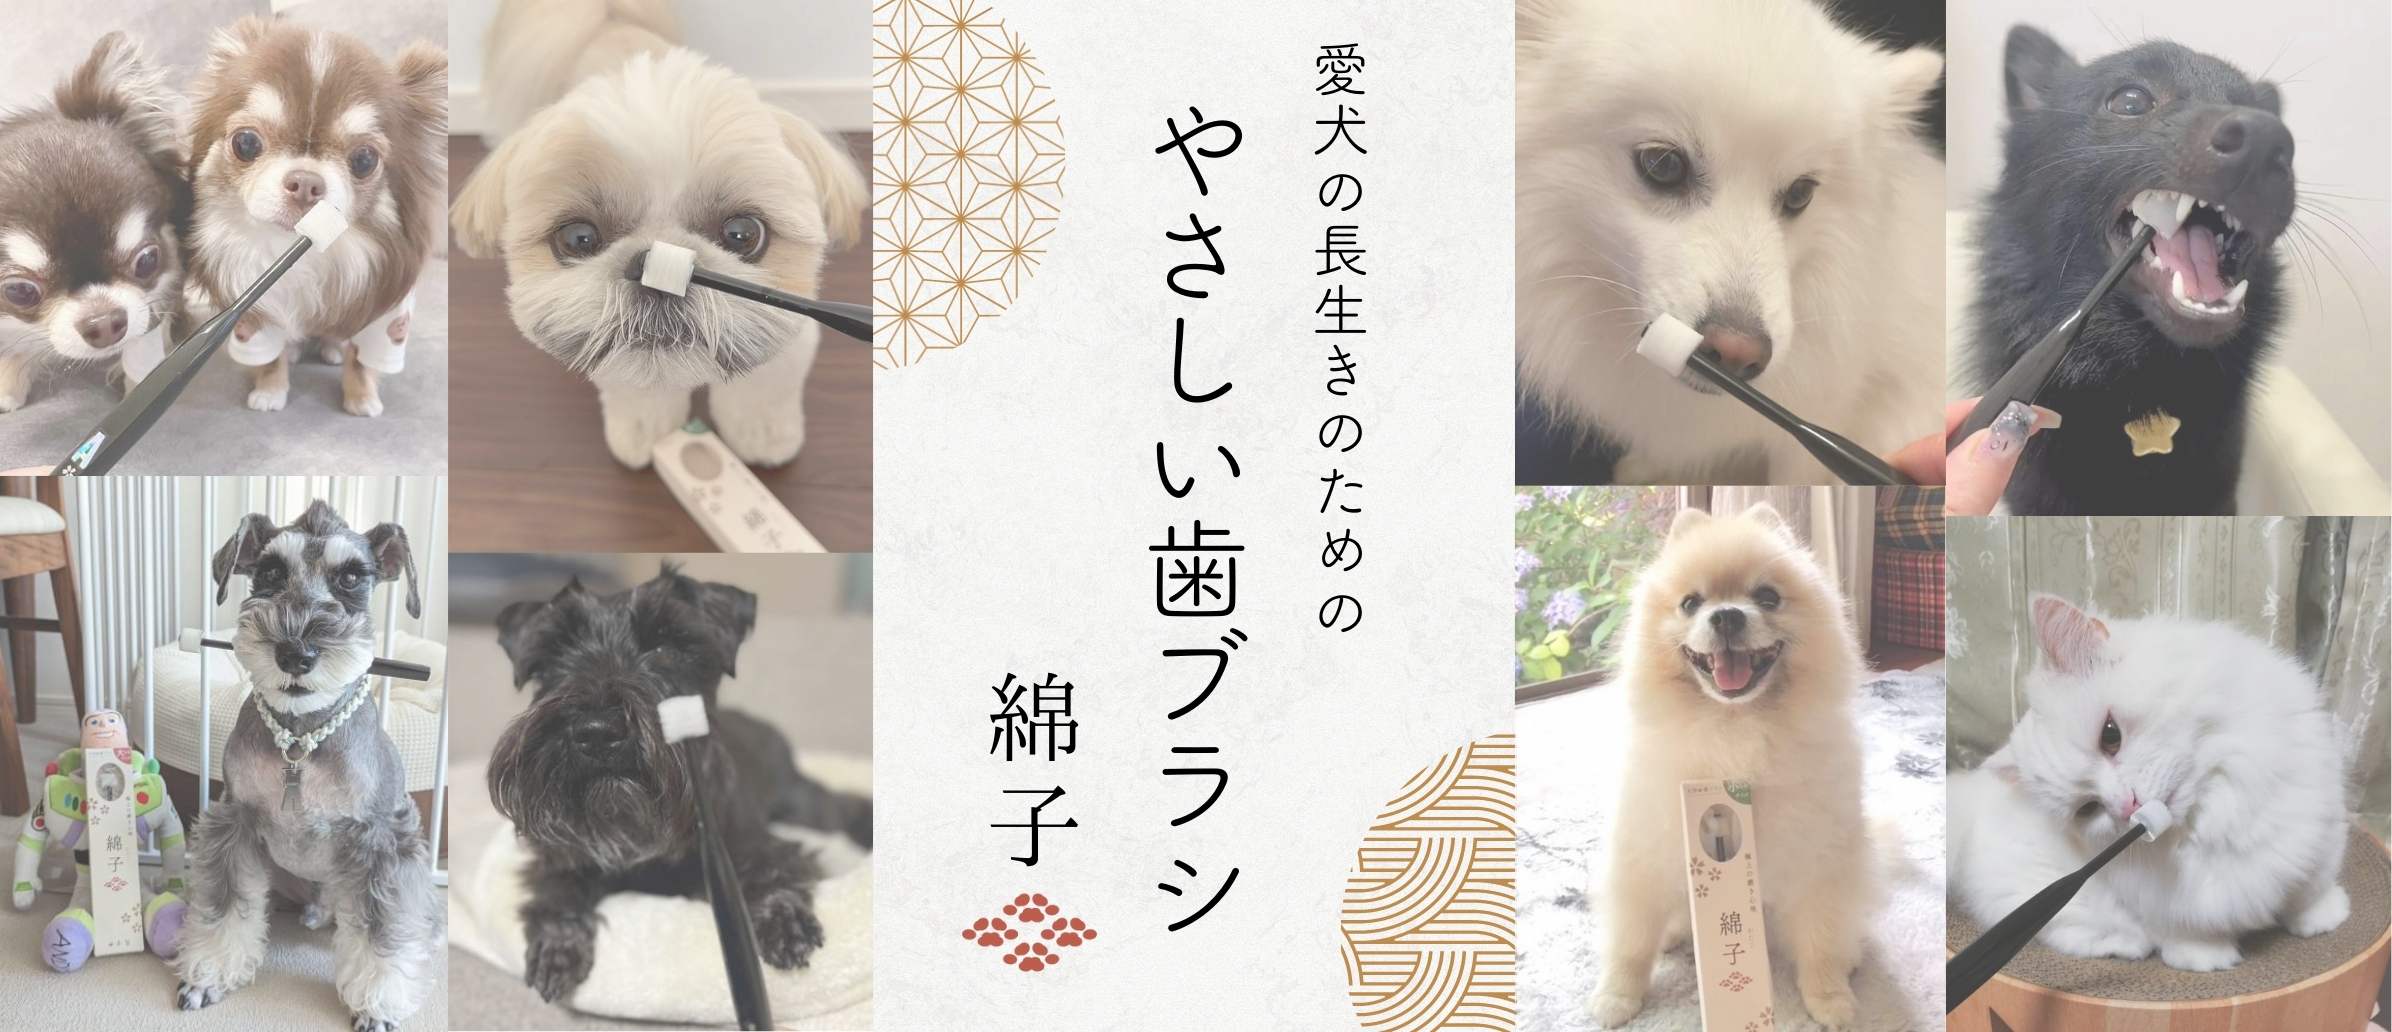 ペットグッズストアNONKORO-LIFE【オンラインショップ 】- ペット用品・販売・犬服・ドッグフードの販売